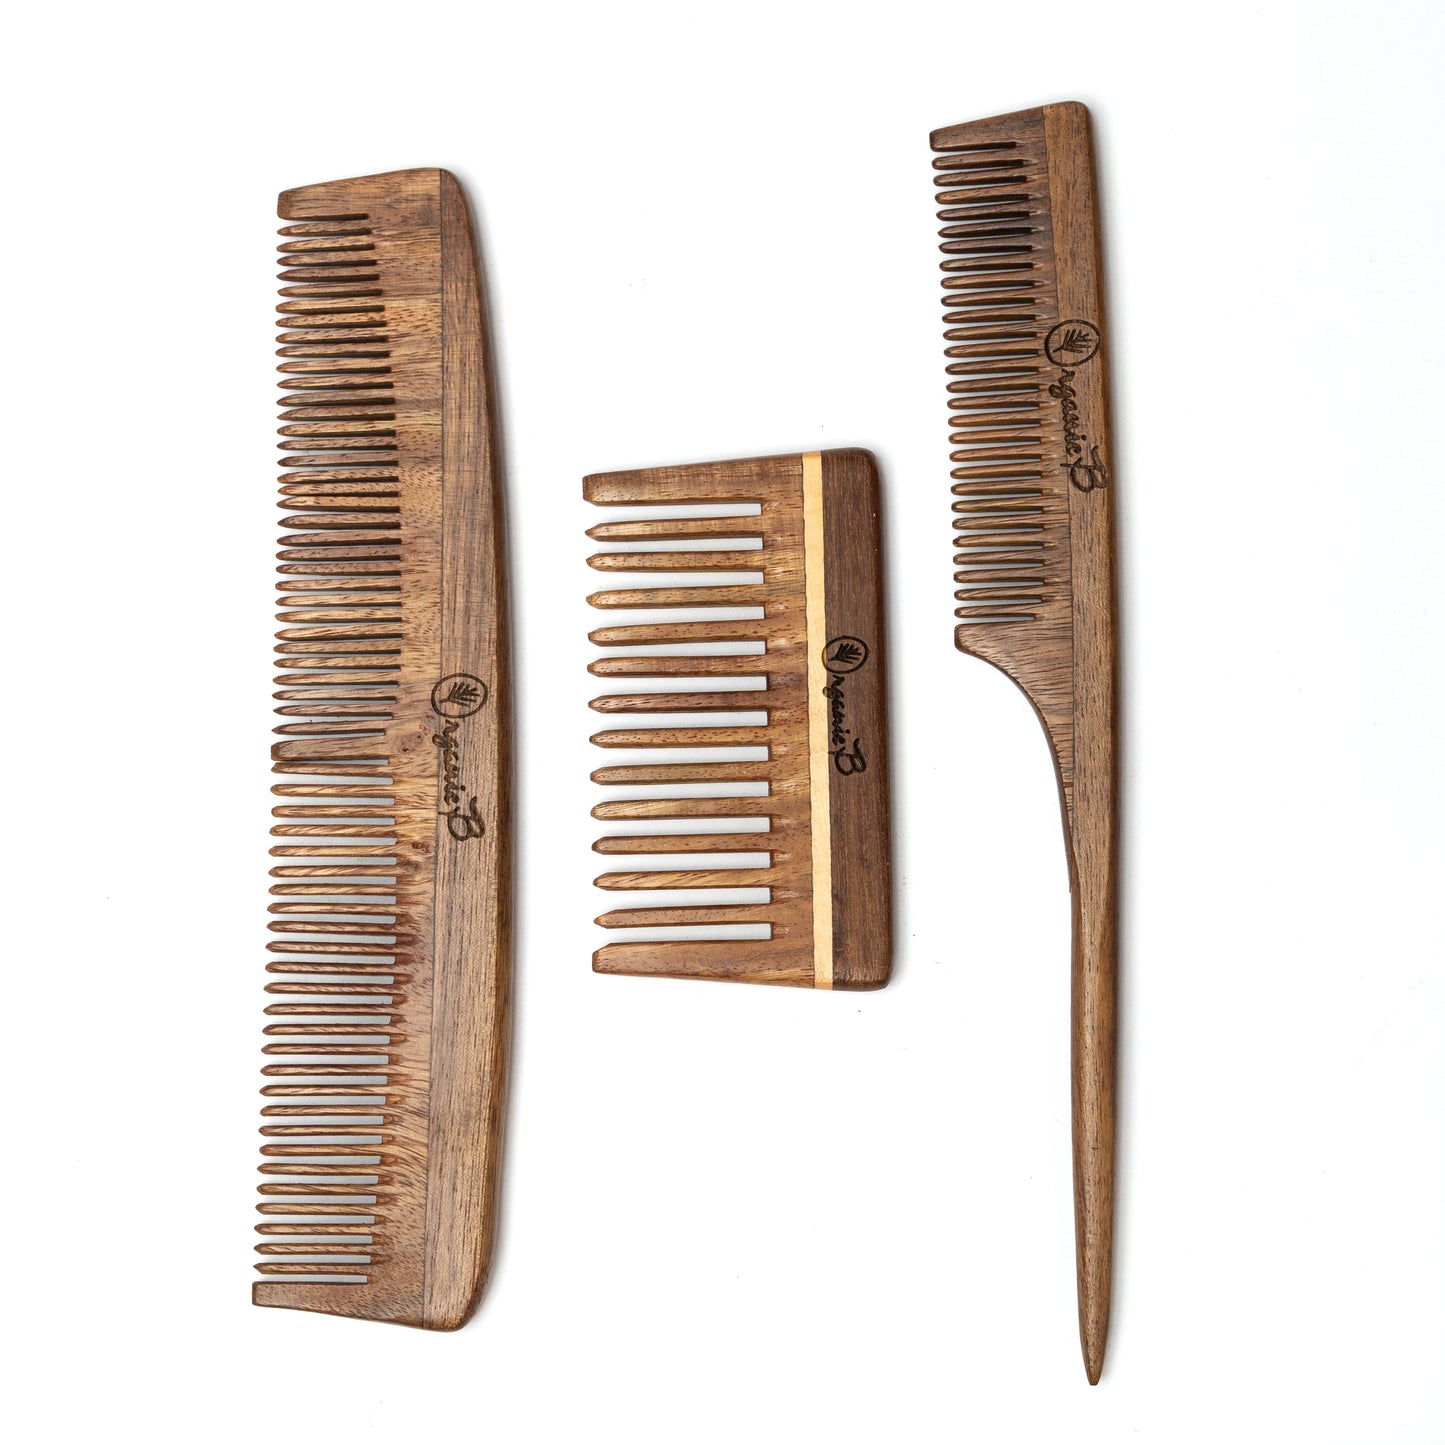 Rosewood Premium Comb (Pack of 3)